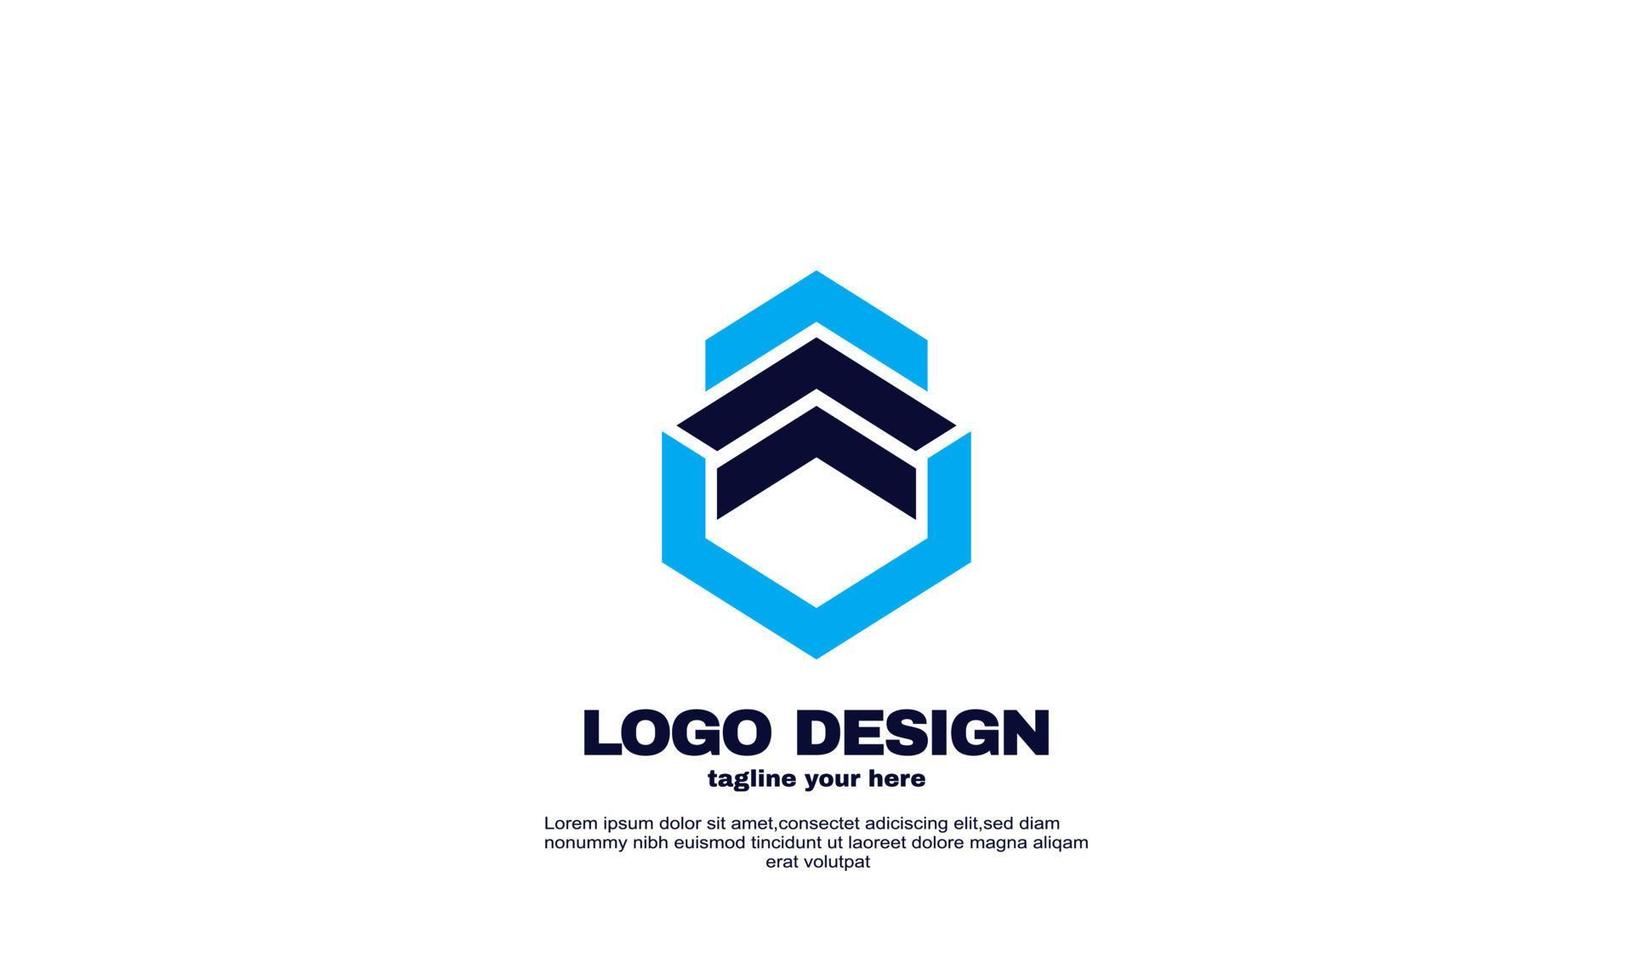 vector de stock empresa corporativa creativa negocio idea simple diseño hexagonal elemento de logotipo plantilla de diseño de identidad de marca